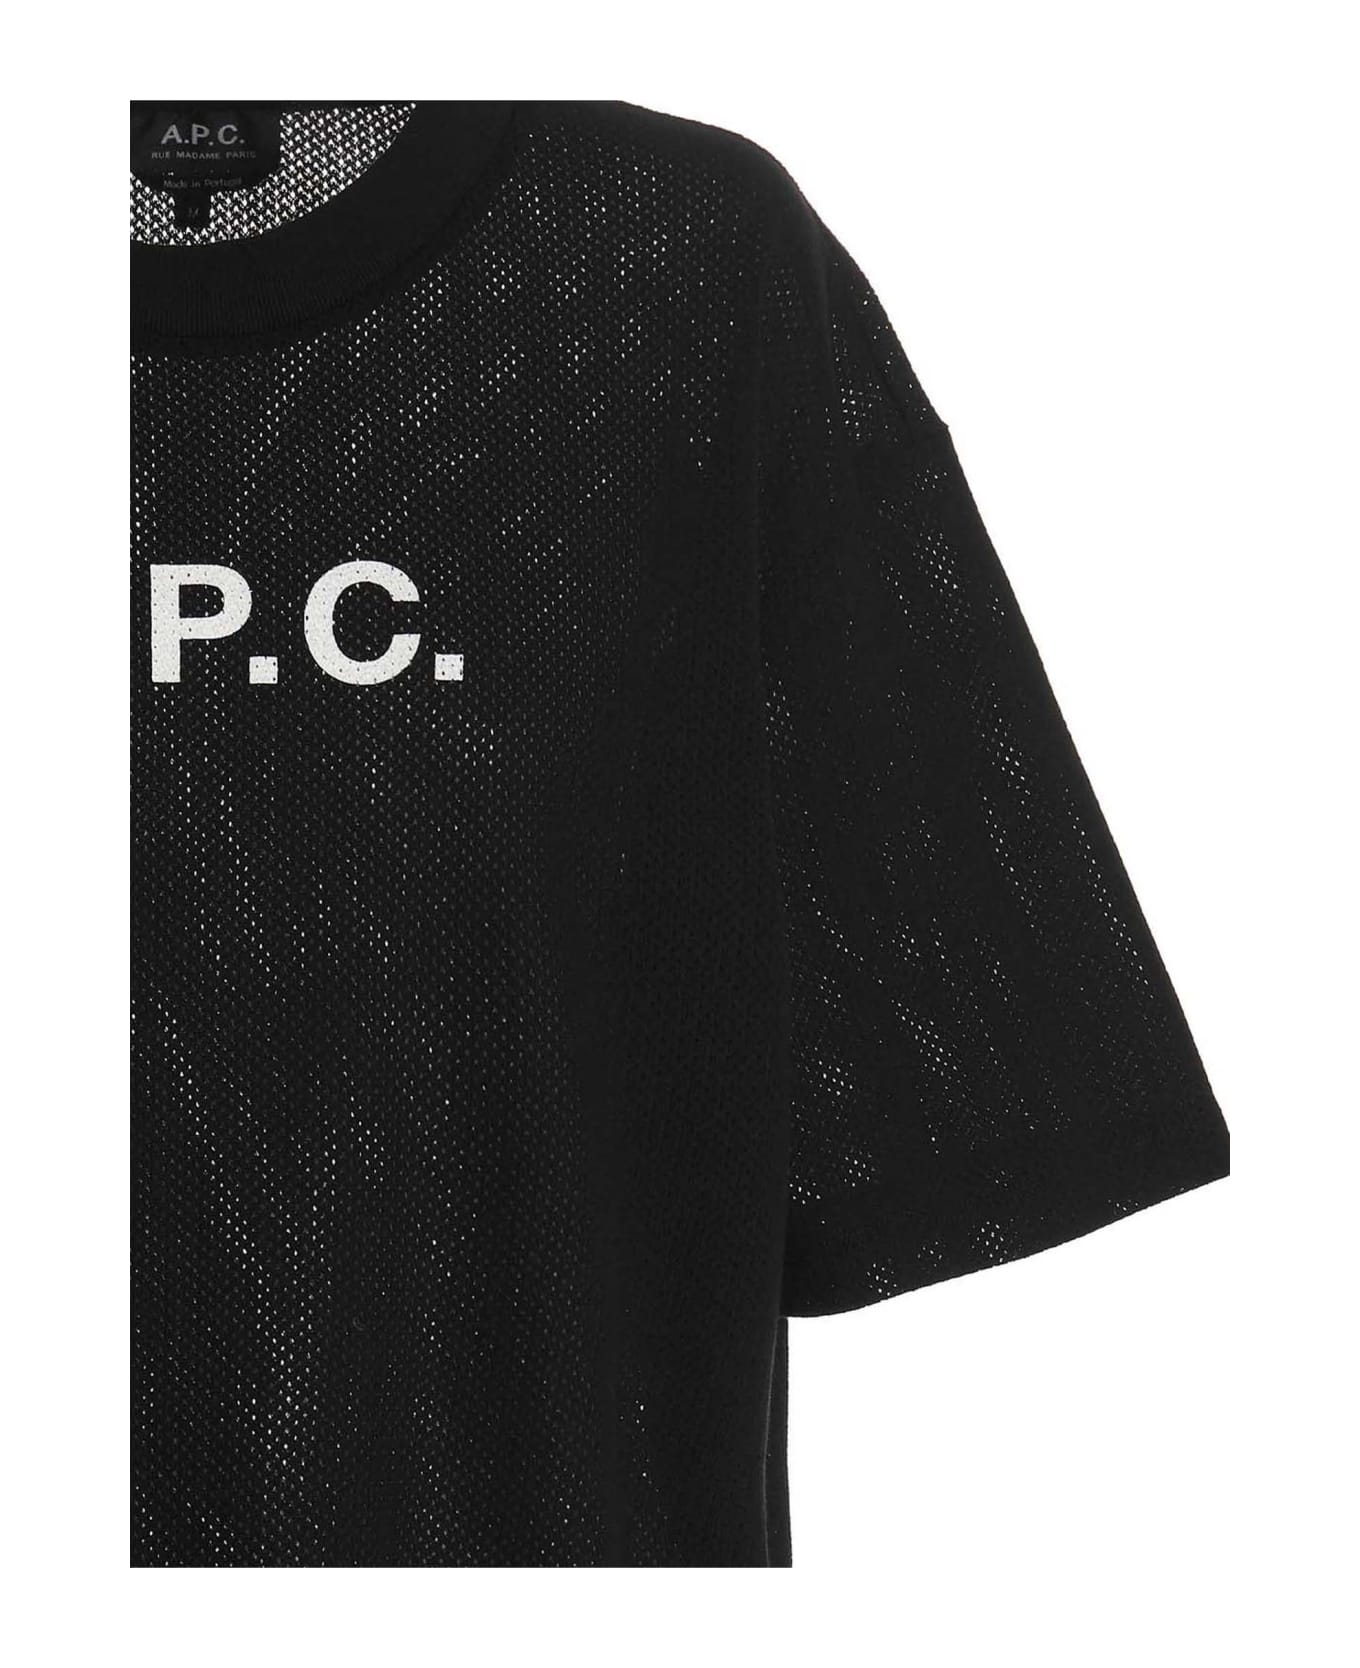 A.P.C. Moran T-shirt - Black